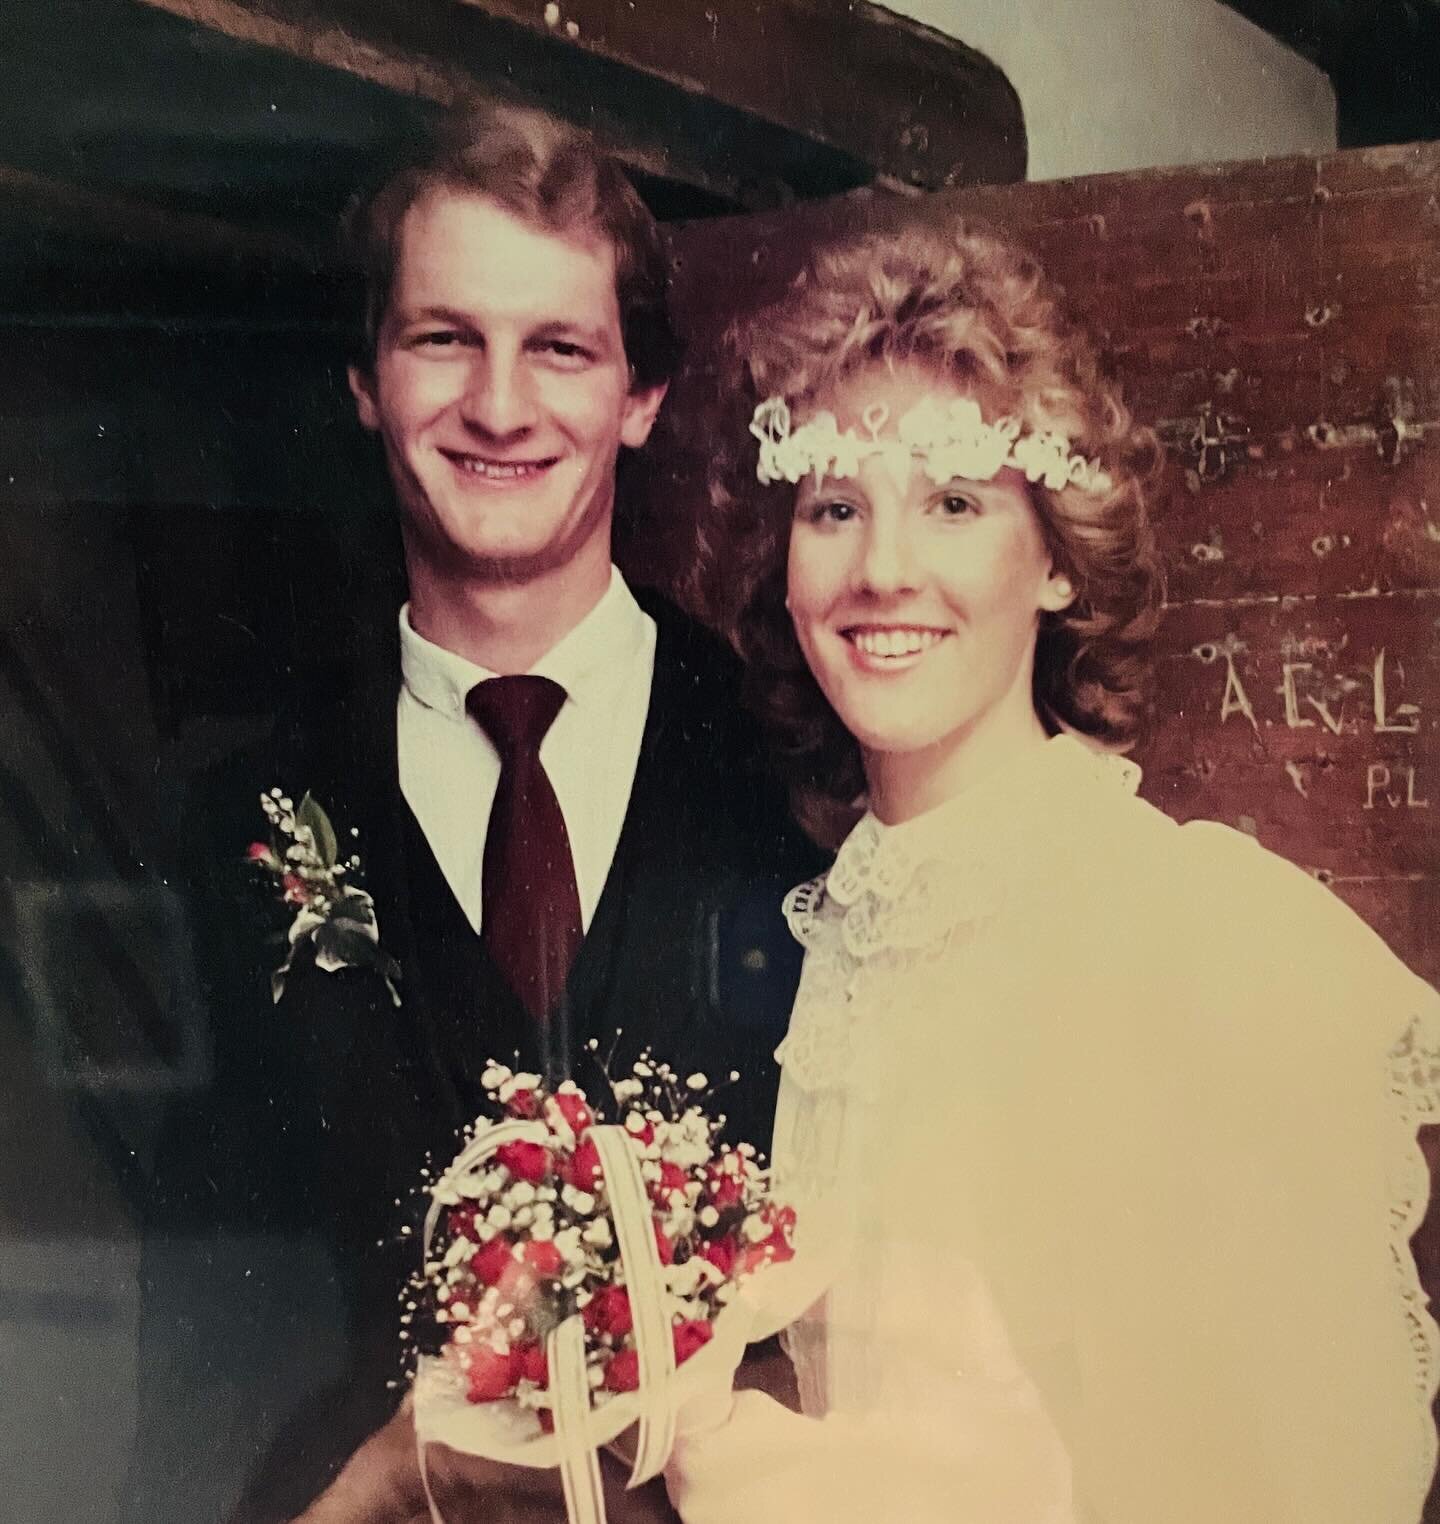 40 years ago today I married the love of my life. 
.
#anniversary #wedding #huwelijk #huwelijksfotografie